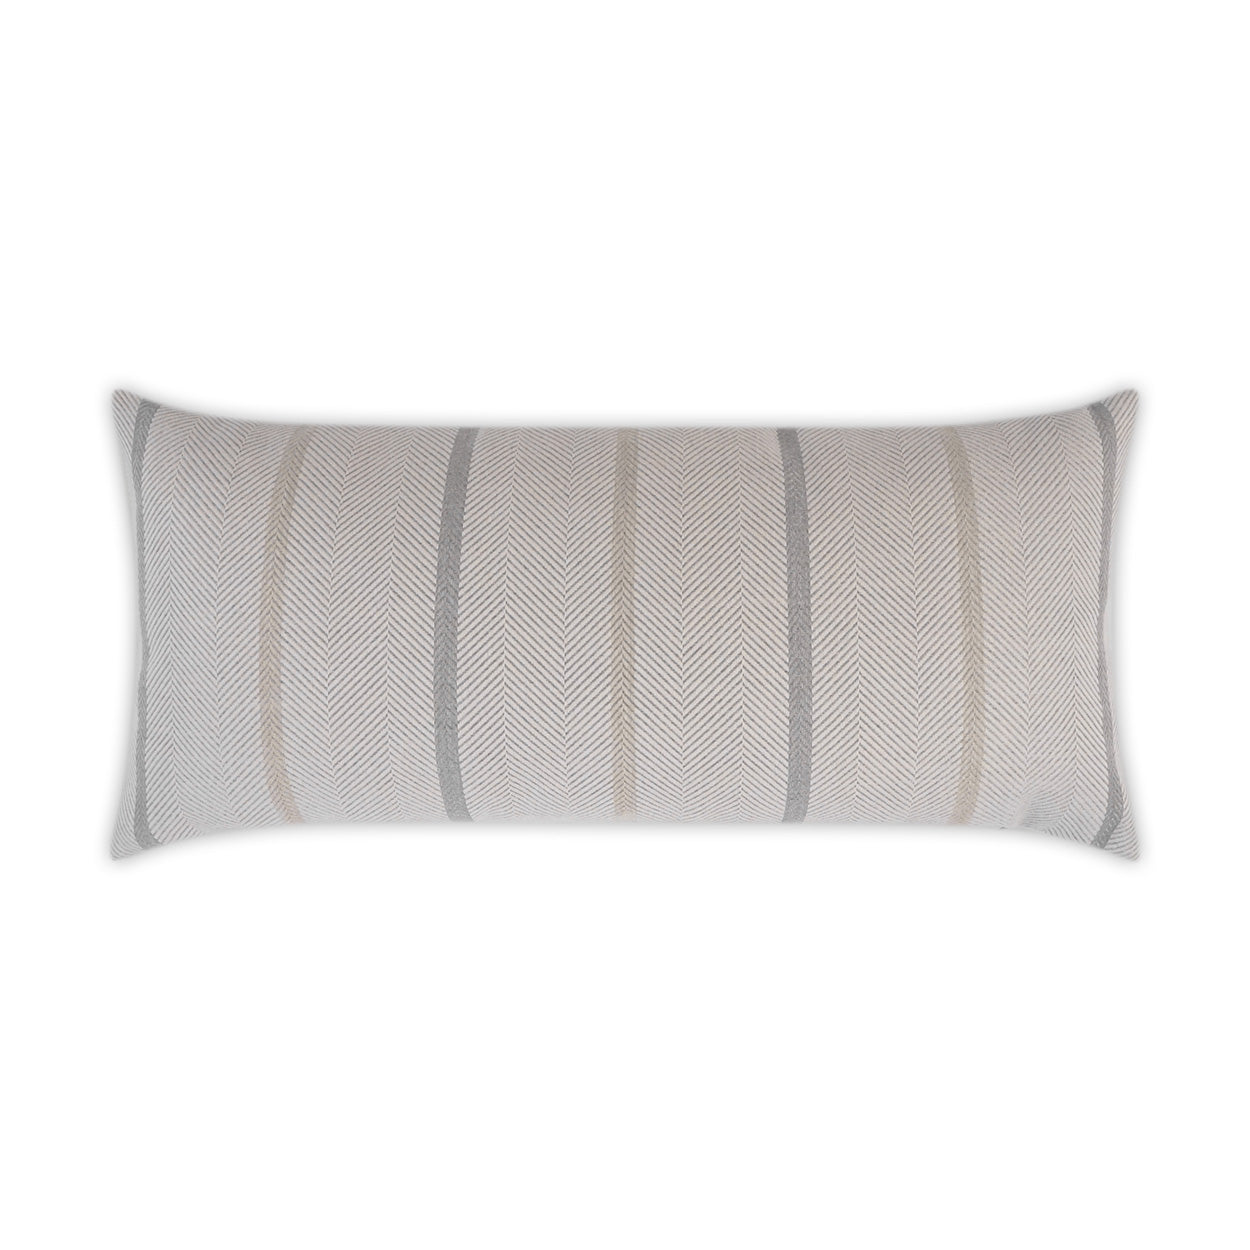 Outdoor Sterling Lumbar Pillow - Cotton